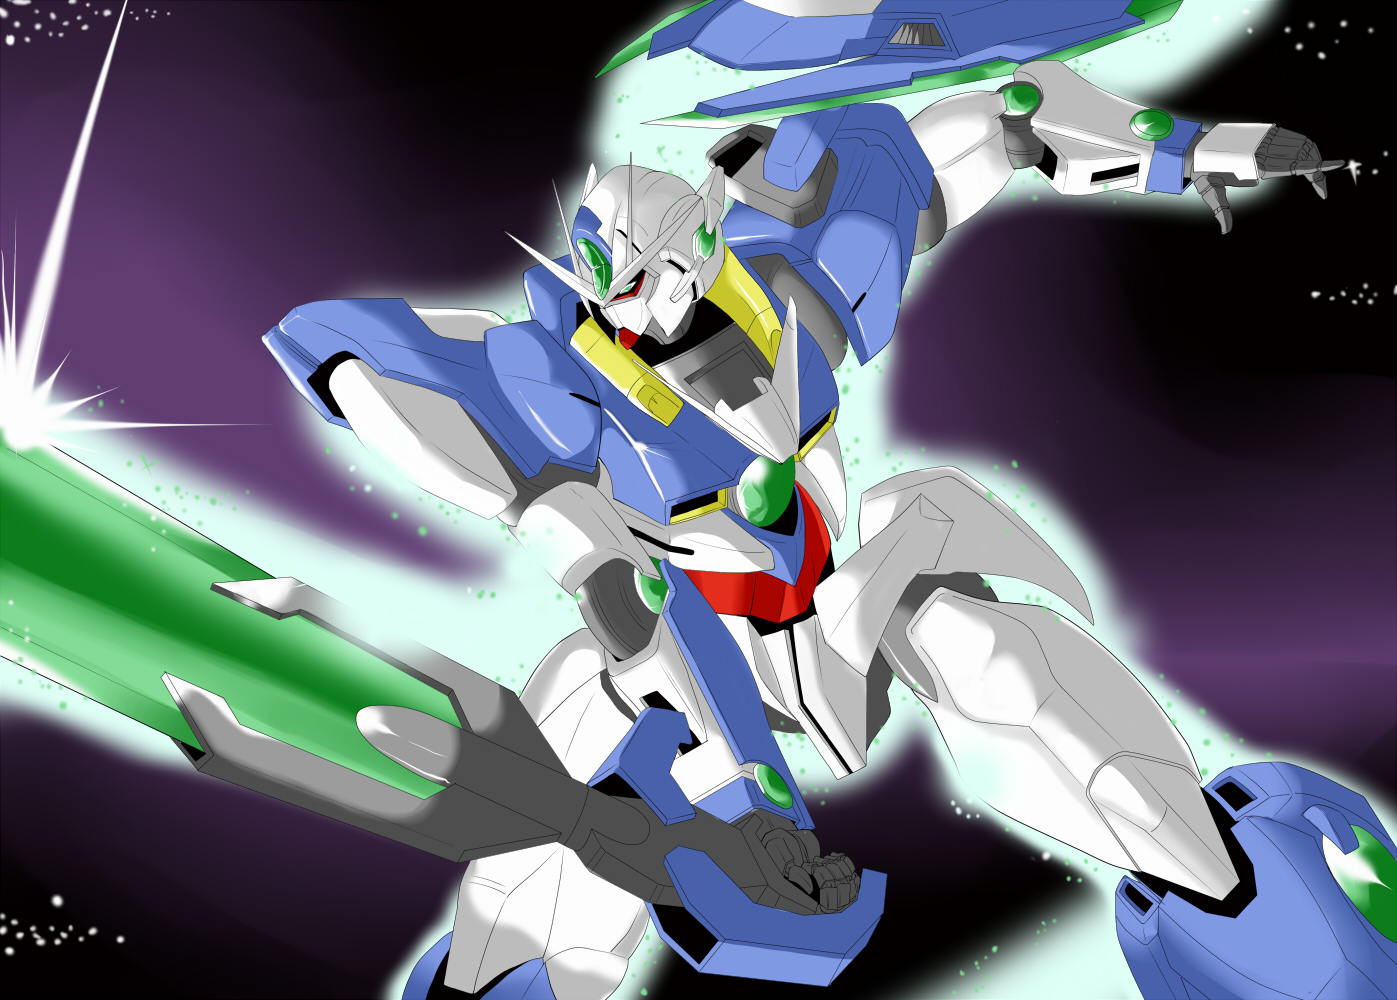 Anime 1397x1000 anime mechs Super Robot Taisen Mobile Suit Gundam 00 00 Qan[T] artwork Gundam digital art fan art Pixiv